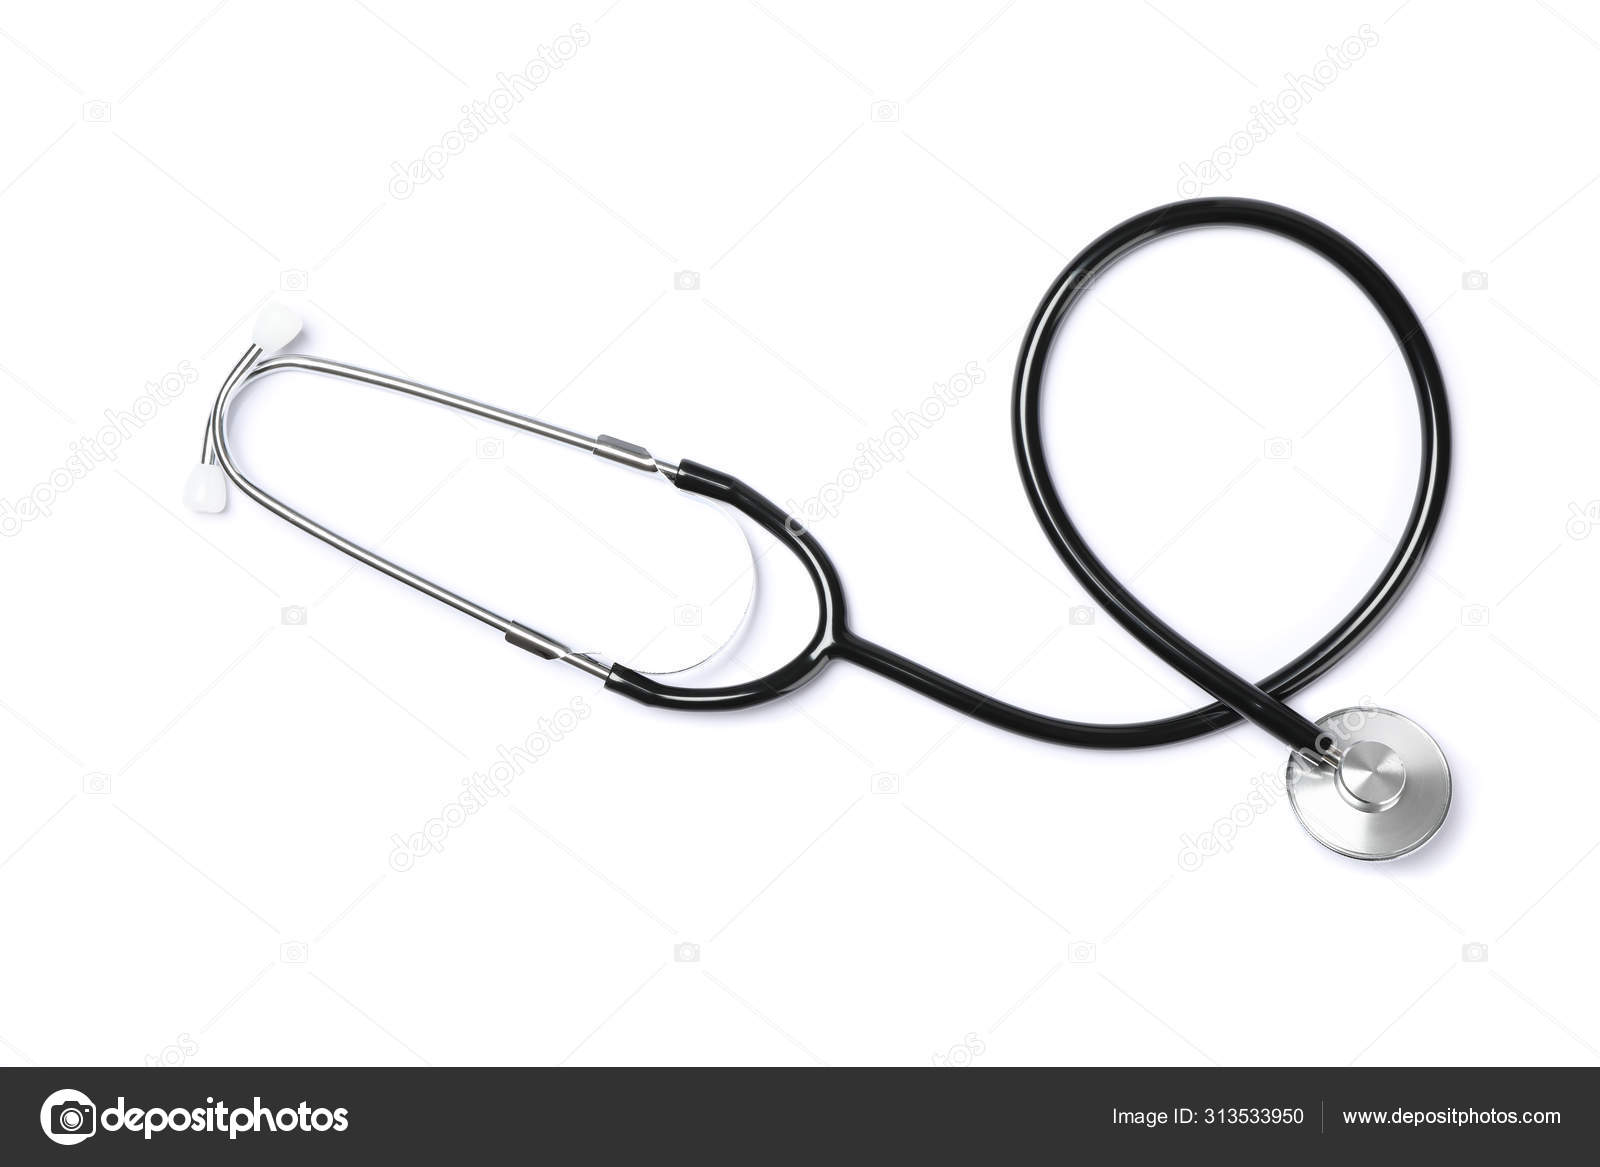 Black stethoscope Stock Photos, Royalty Free Black stethoscope Images |  Depositphotos